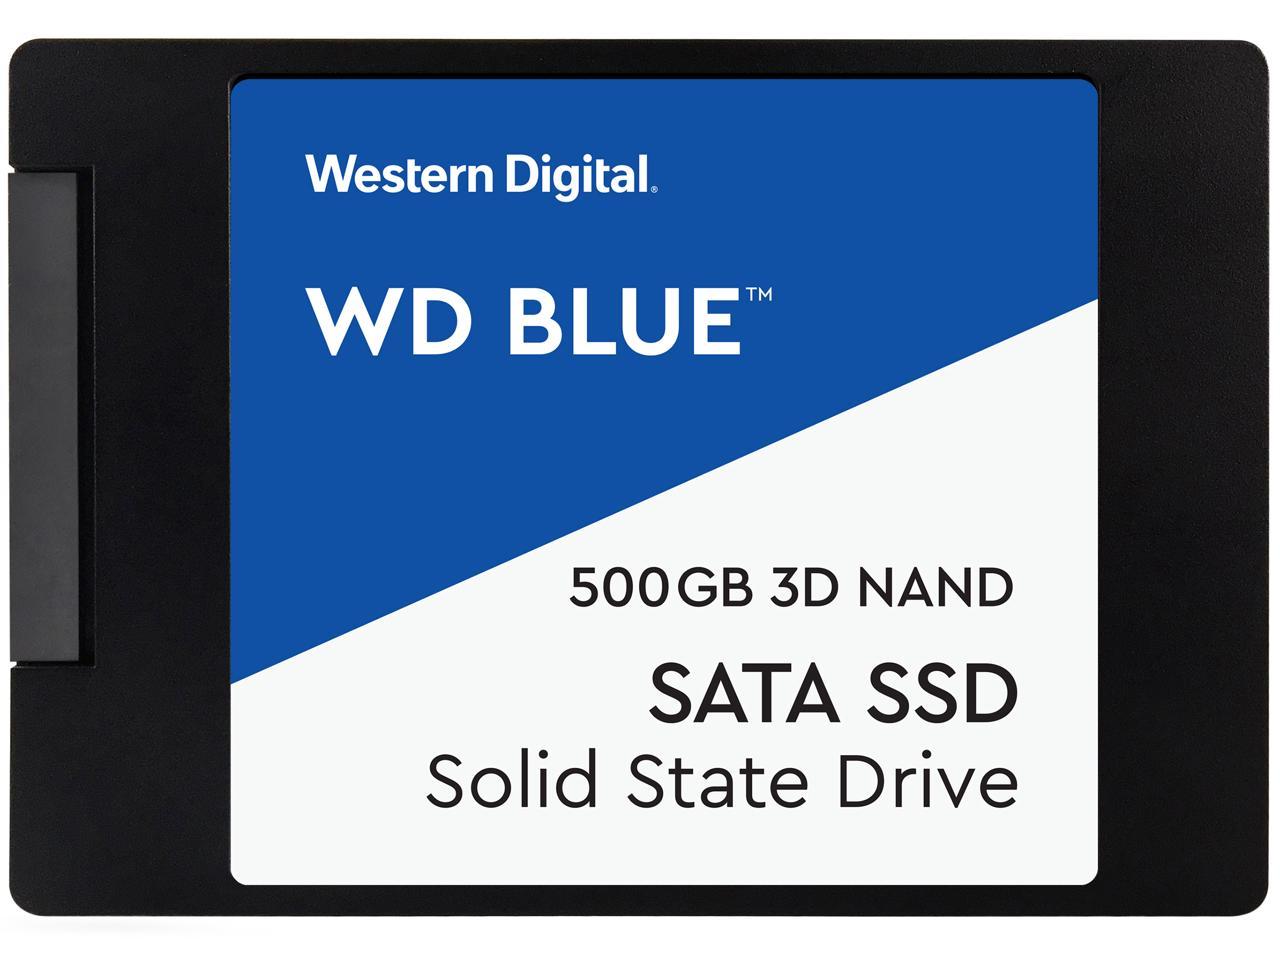 WD Blue 3D NAND 500GB Internal SSD SATA III 6Gb/s $49.99